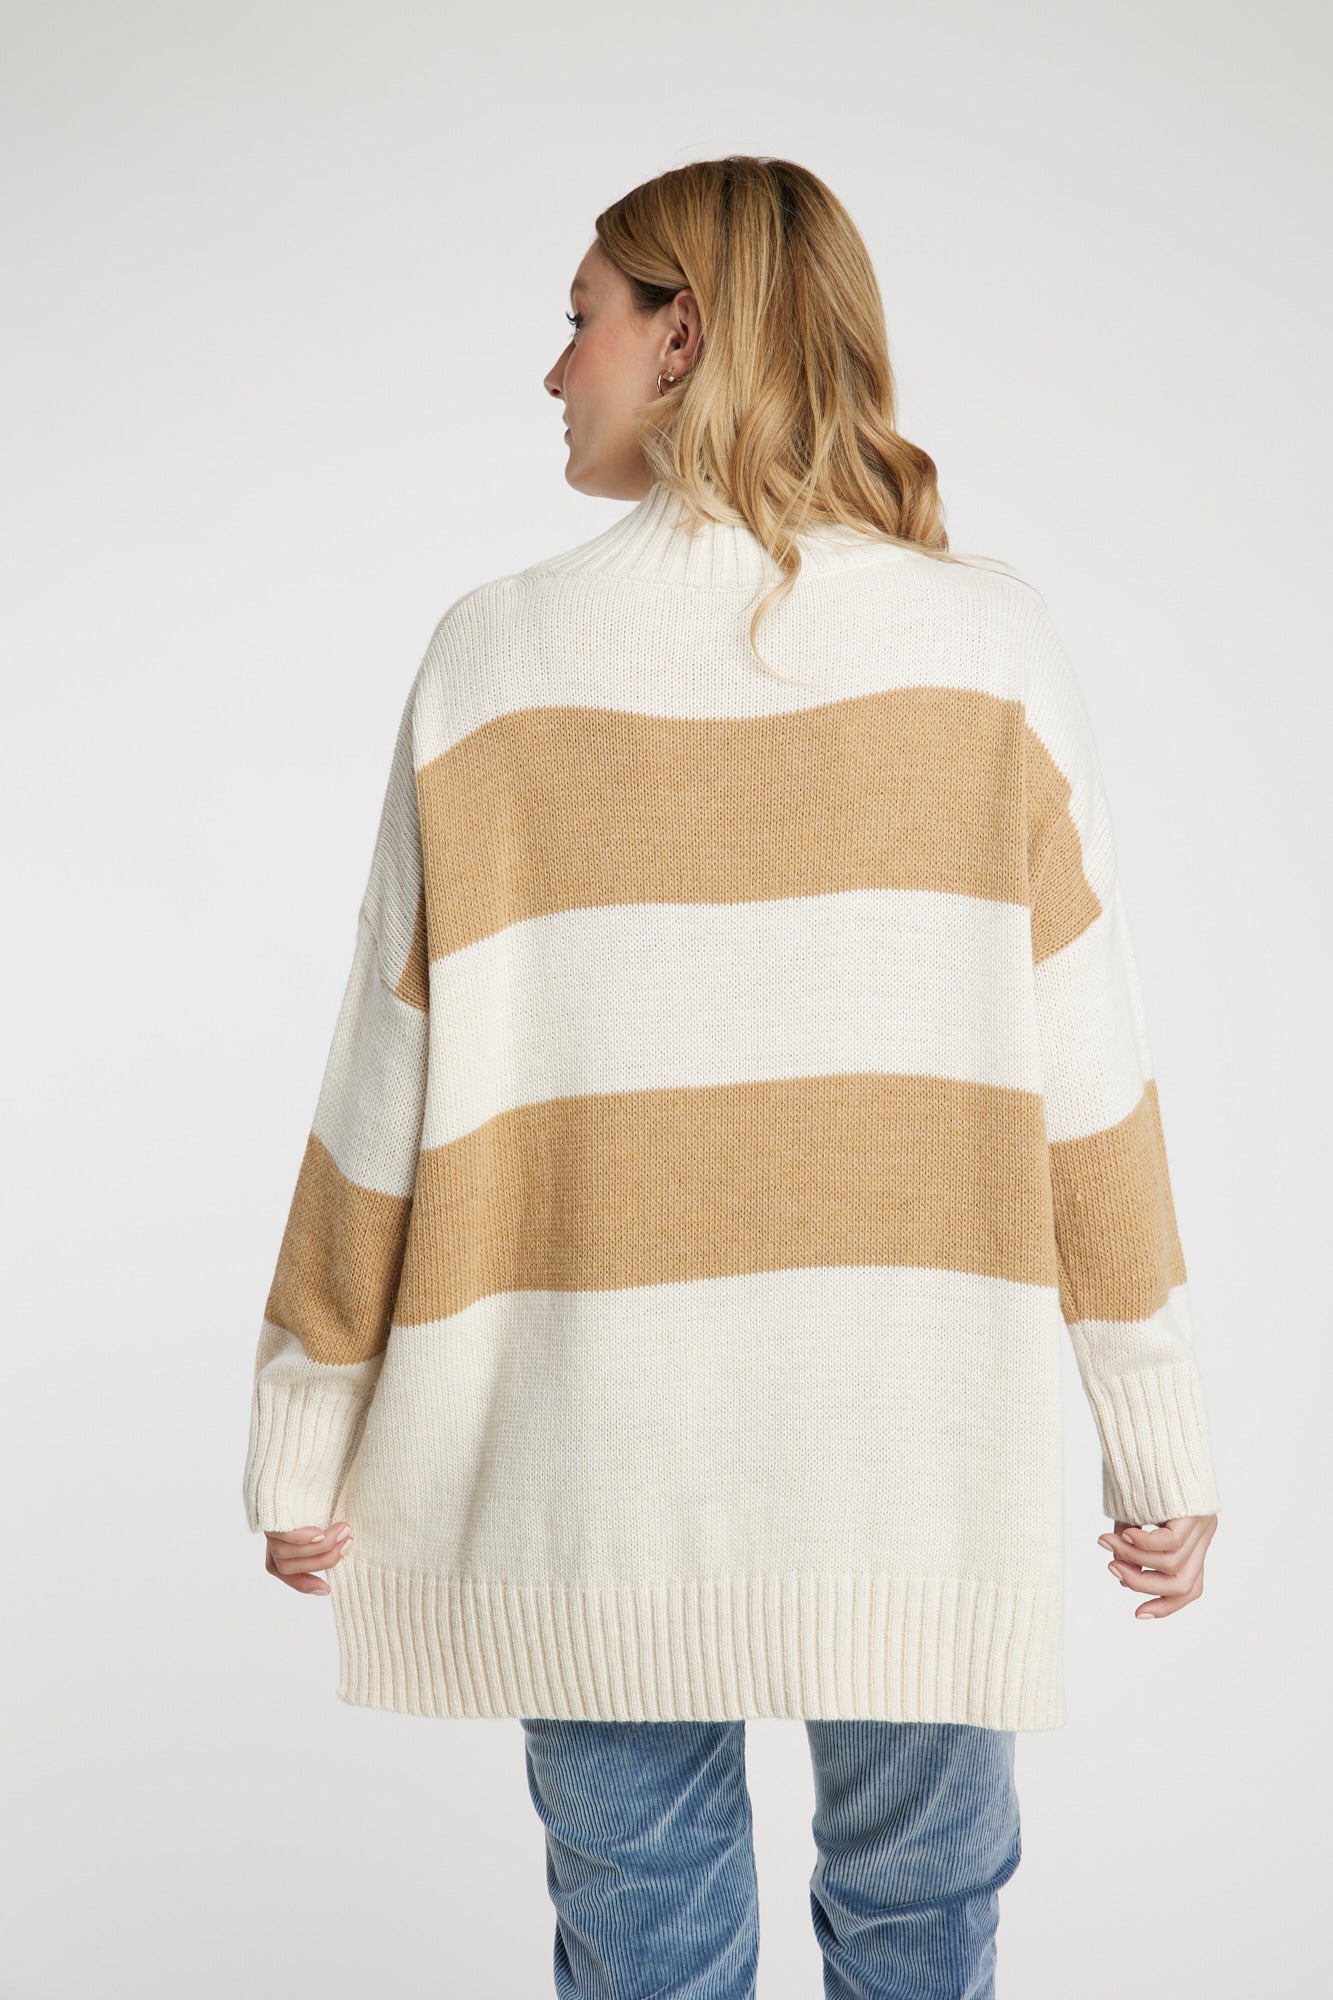 Sweater crudo Leidiró